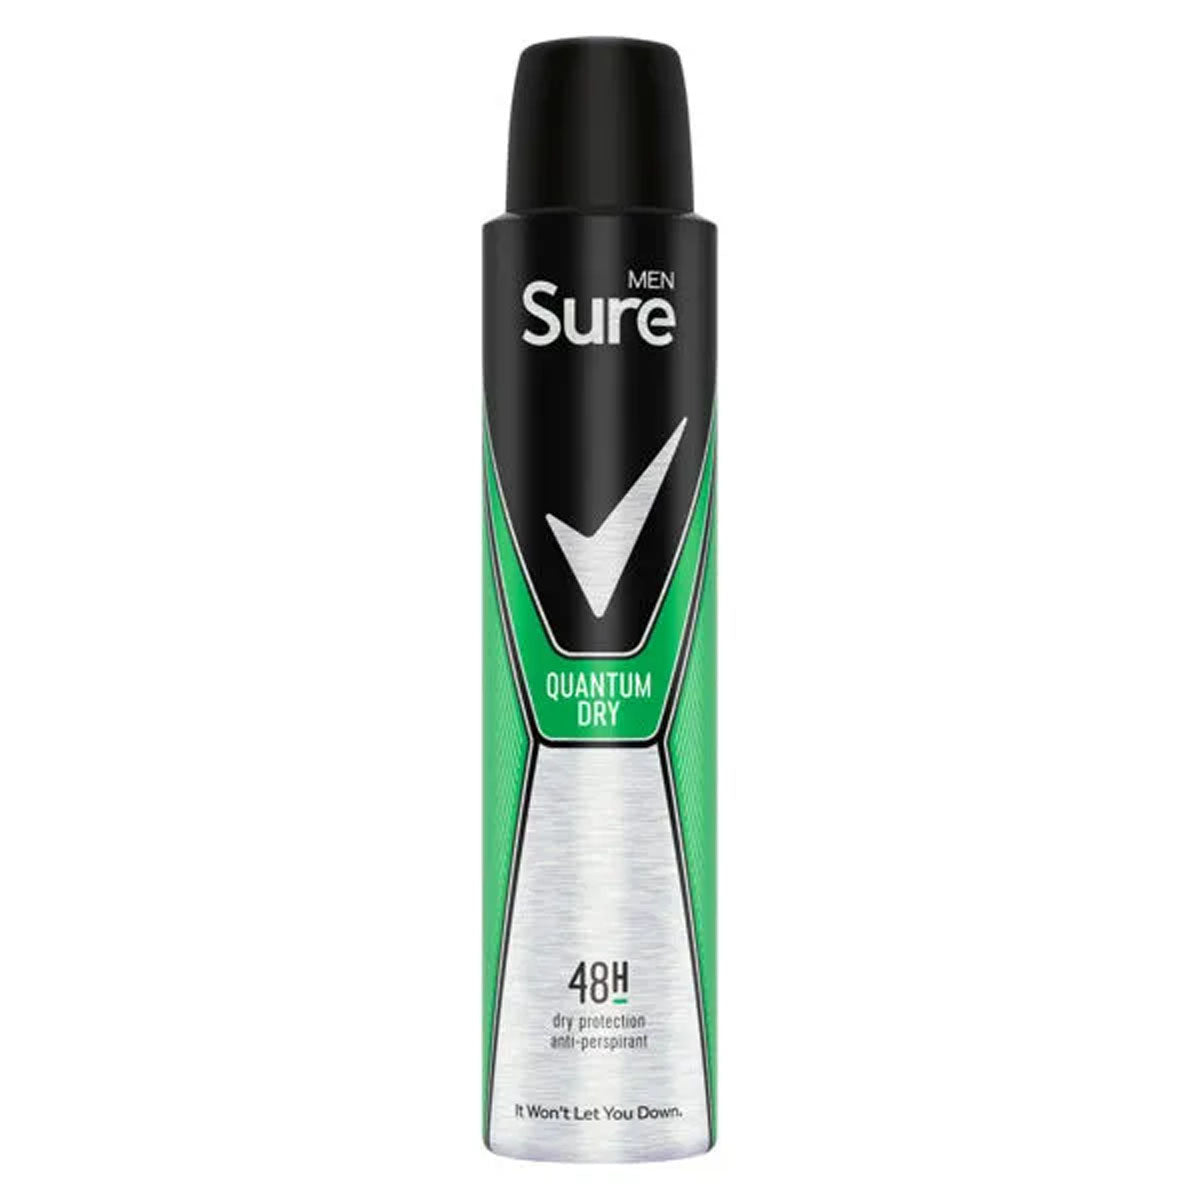 Sure - Men Anti Perspirant Aerosol Quantum Dry - 200ml deodorant spray on a white background.